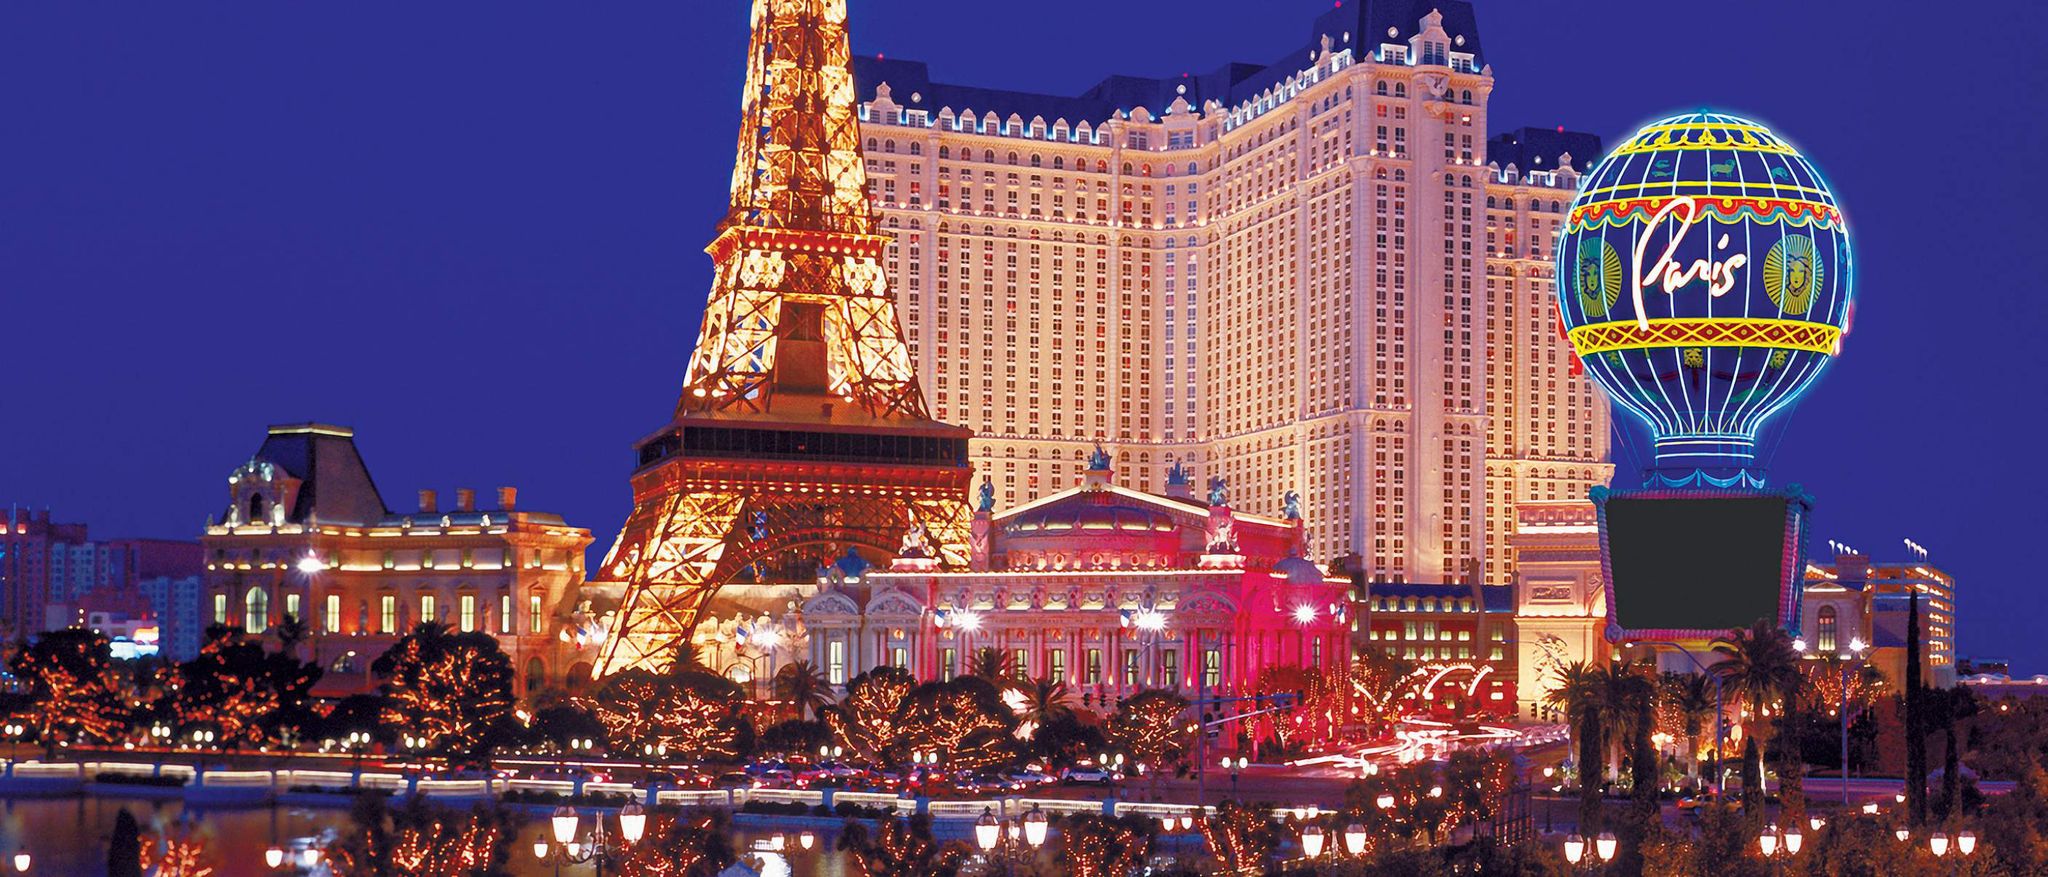 Paris Las Vegas in Las Vegas, Nevada